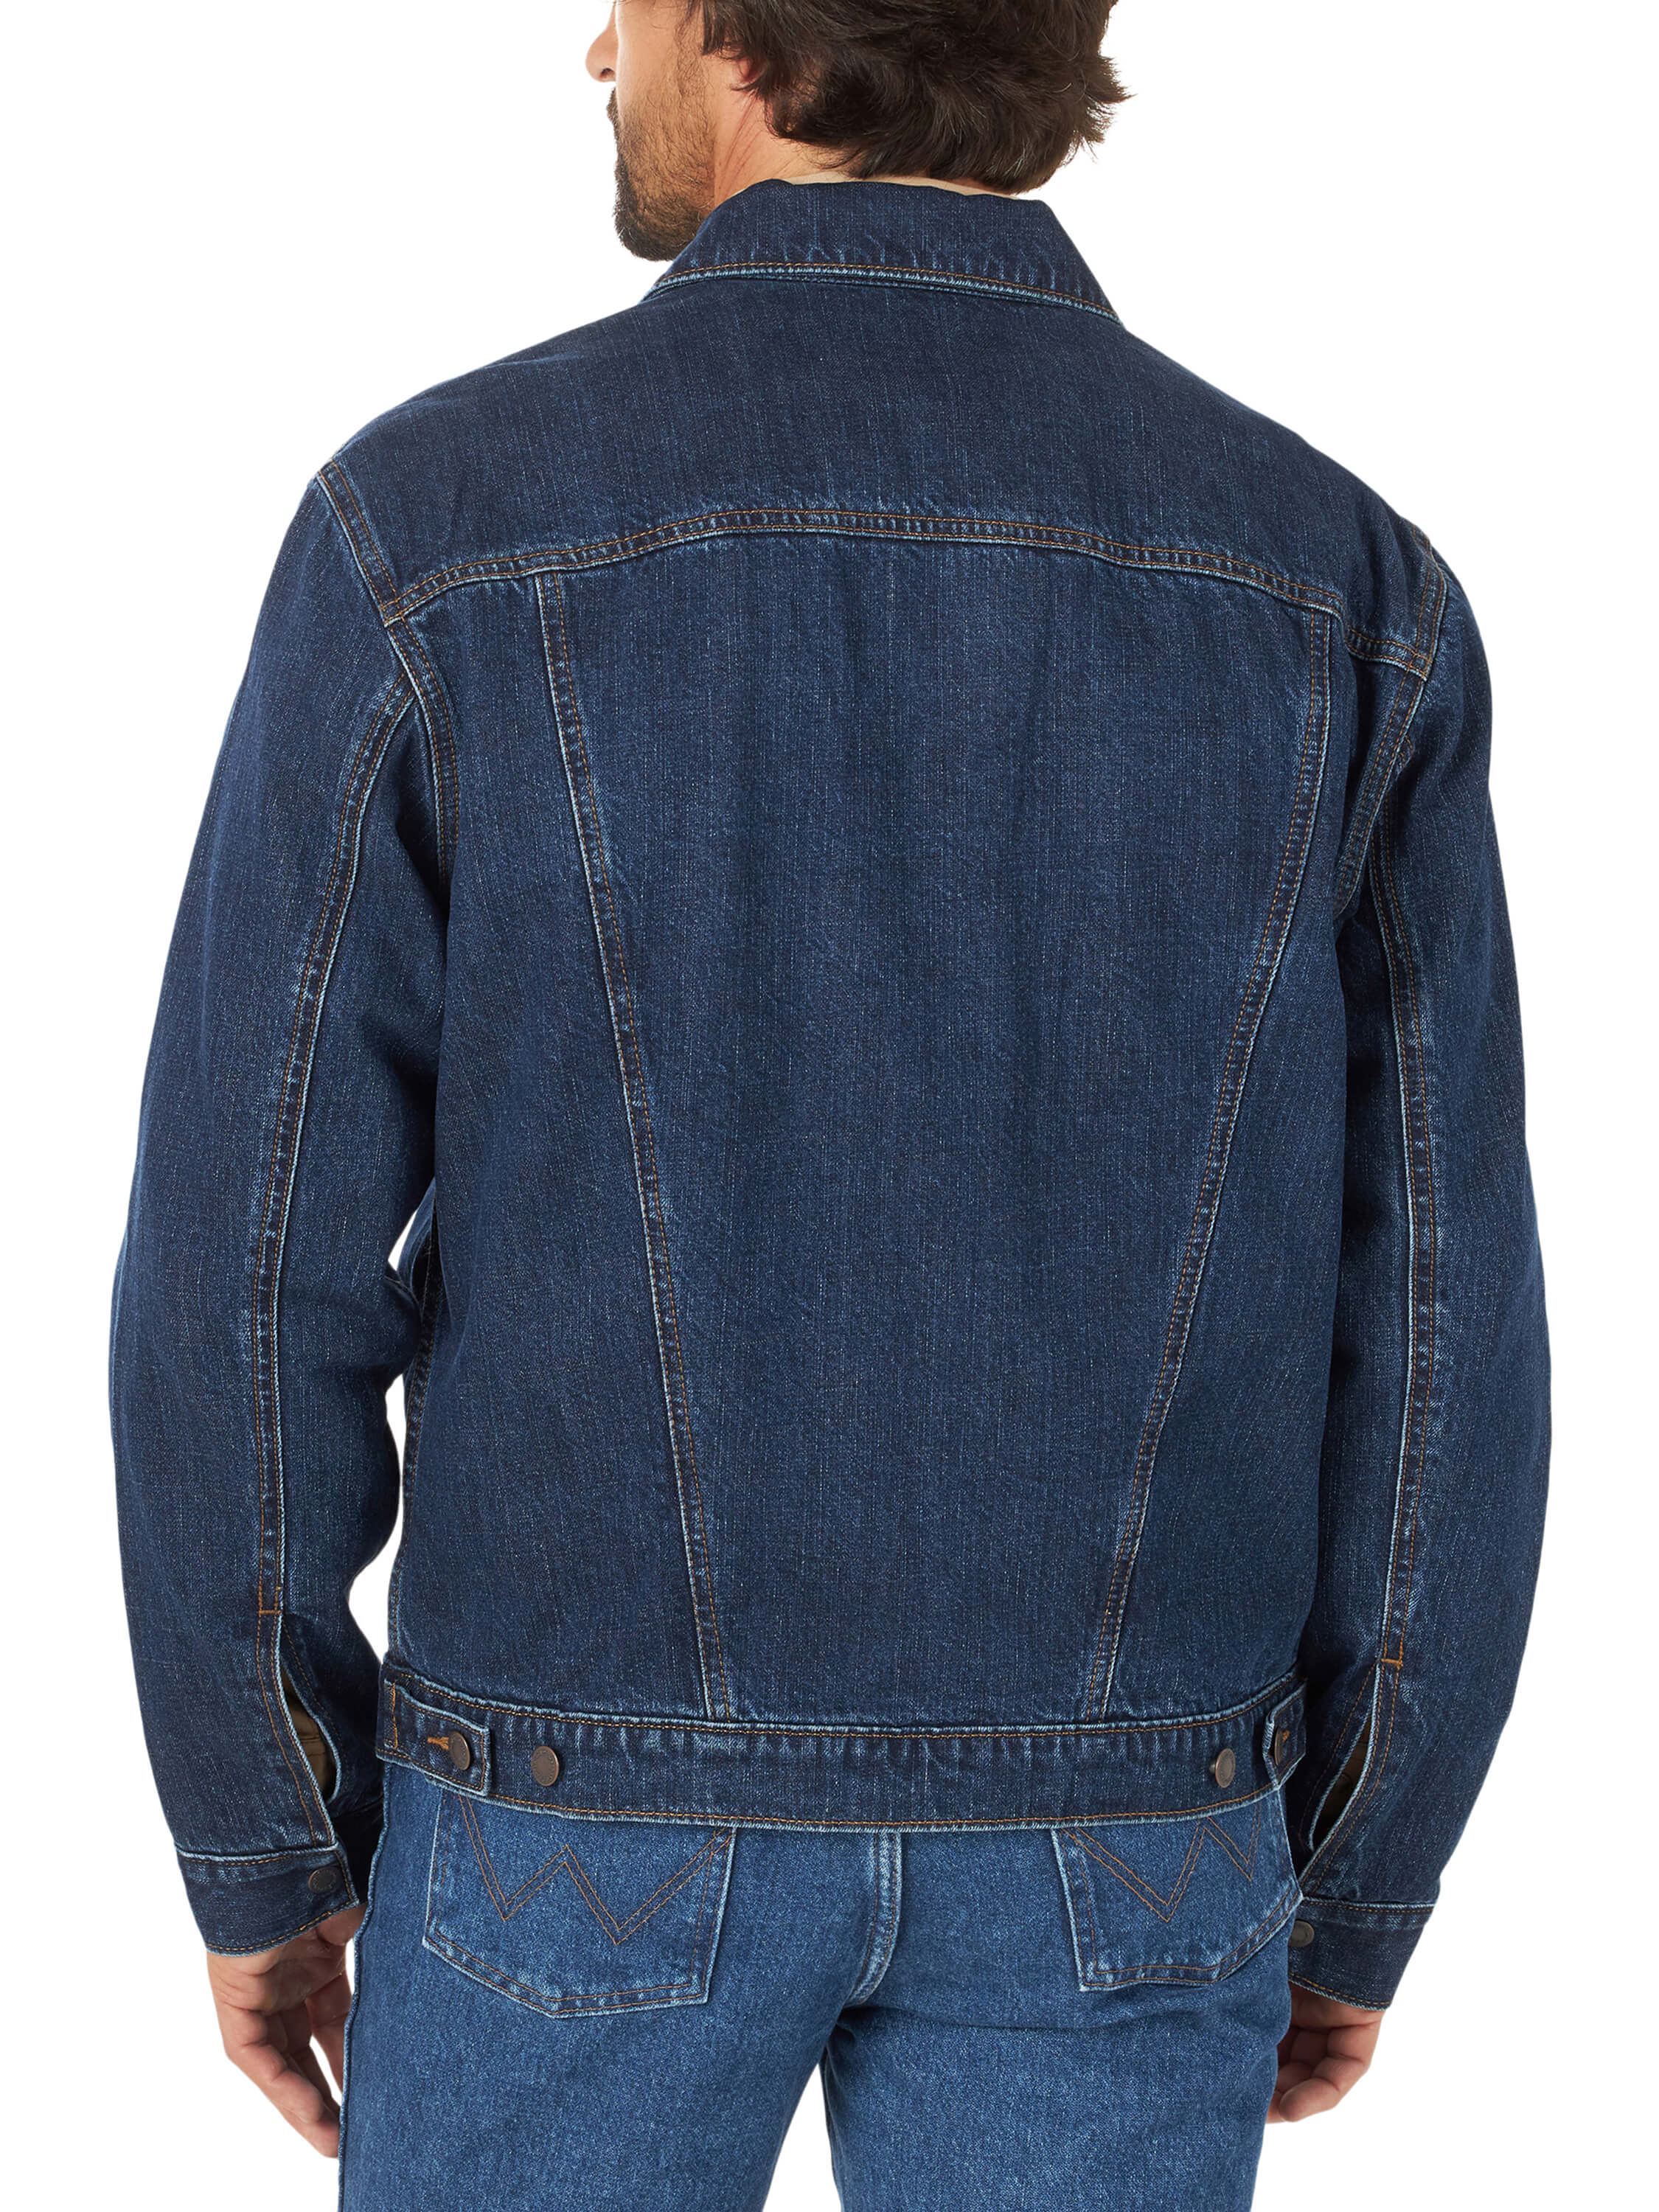 Wrangler® Denim Jacket - Blanket Lined - Storm Blue